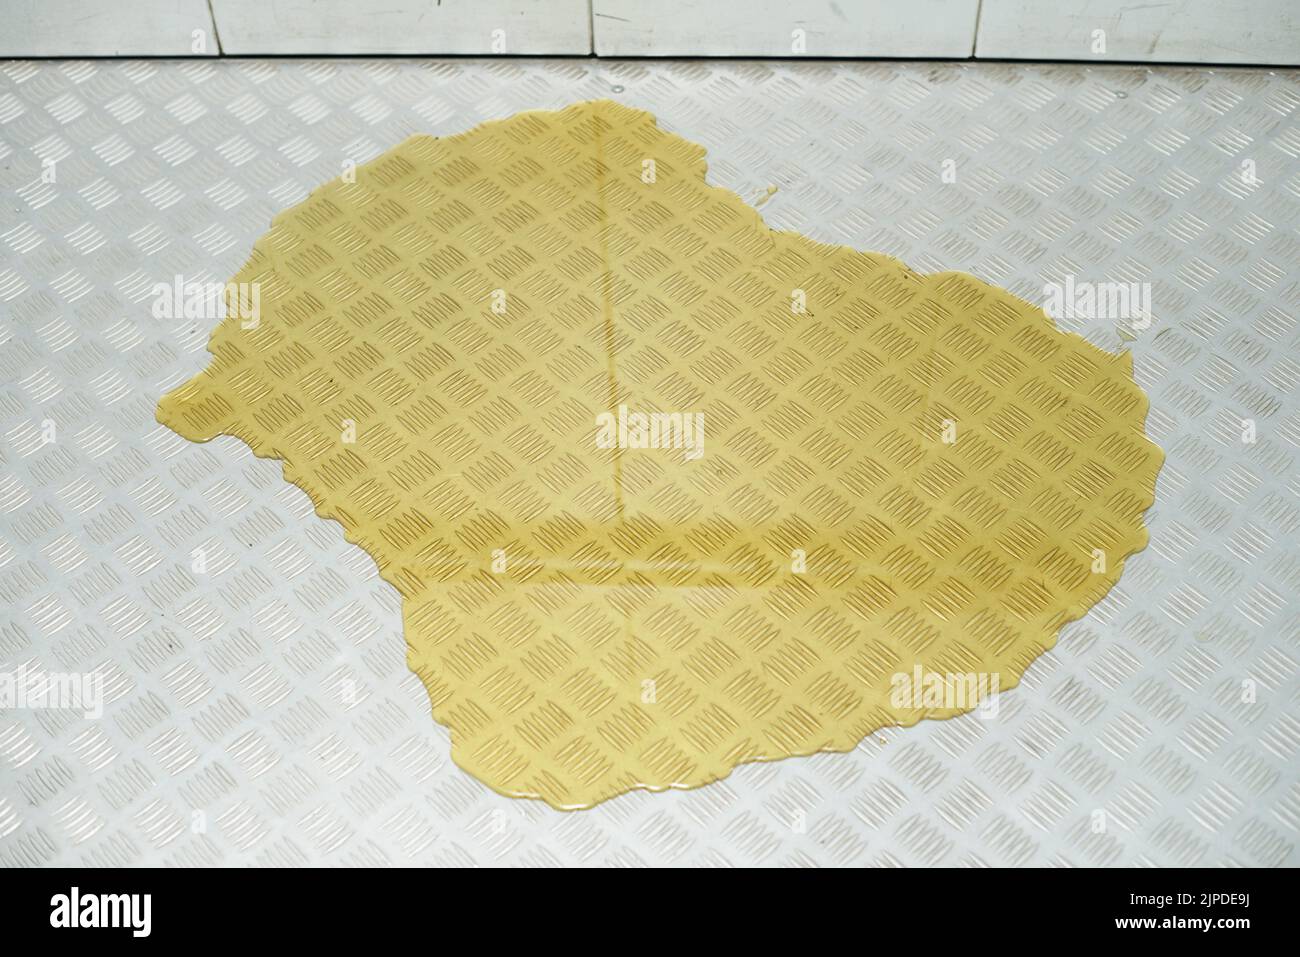 Charco amarillo grande de líquido u orina en el suelo del ascensor. Foto de stock